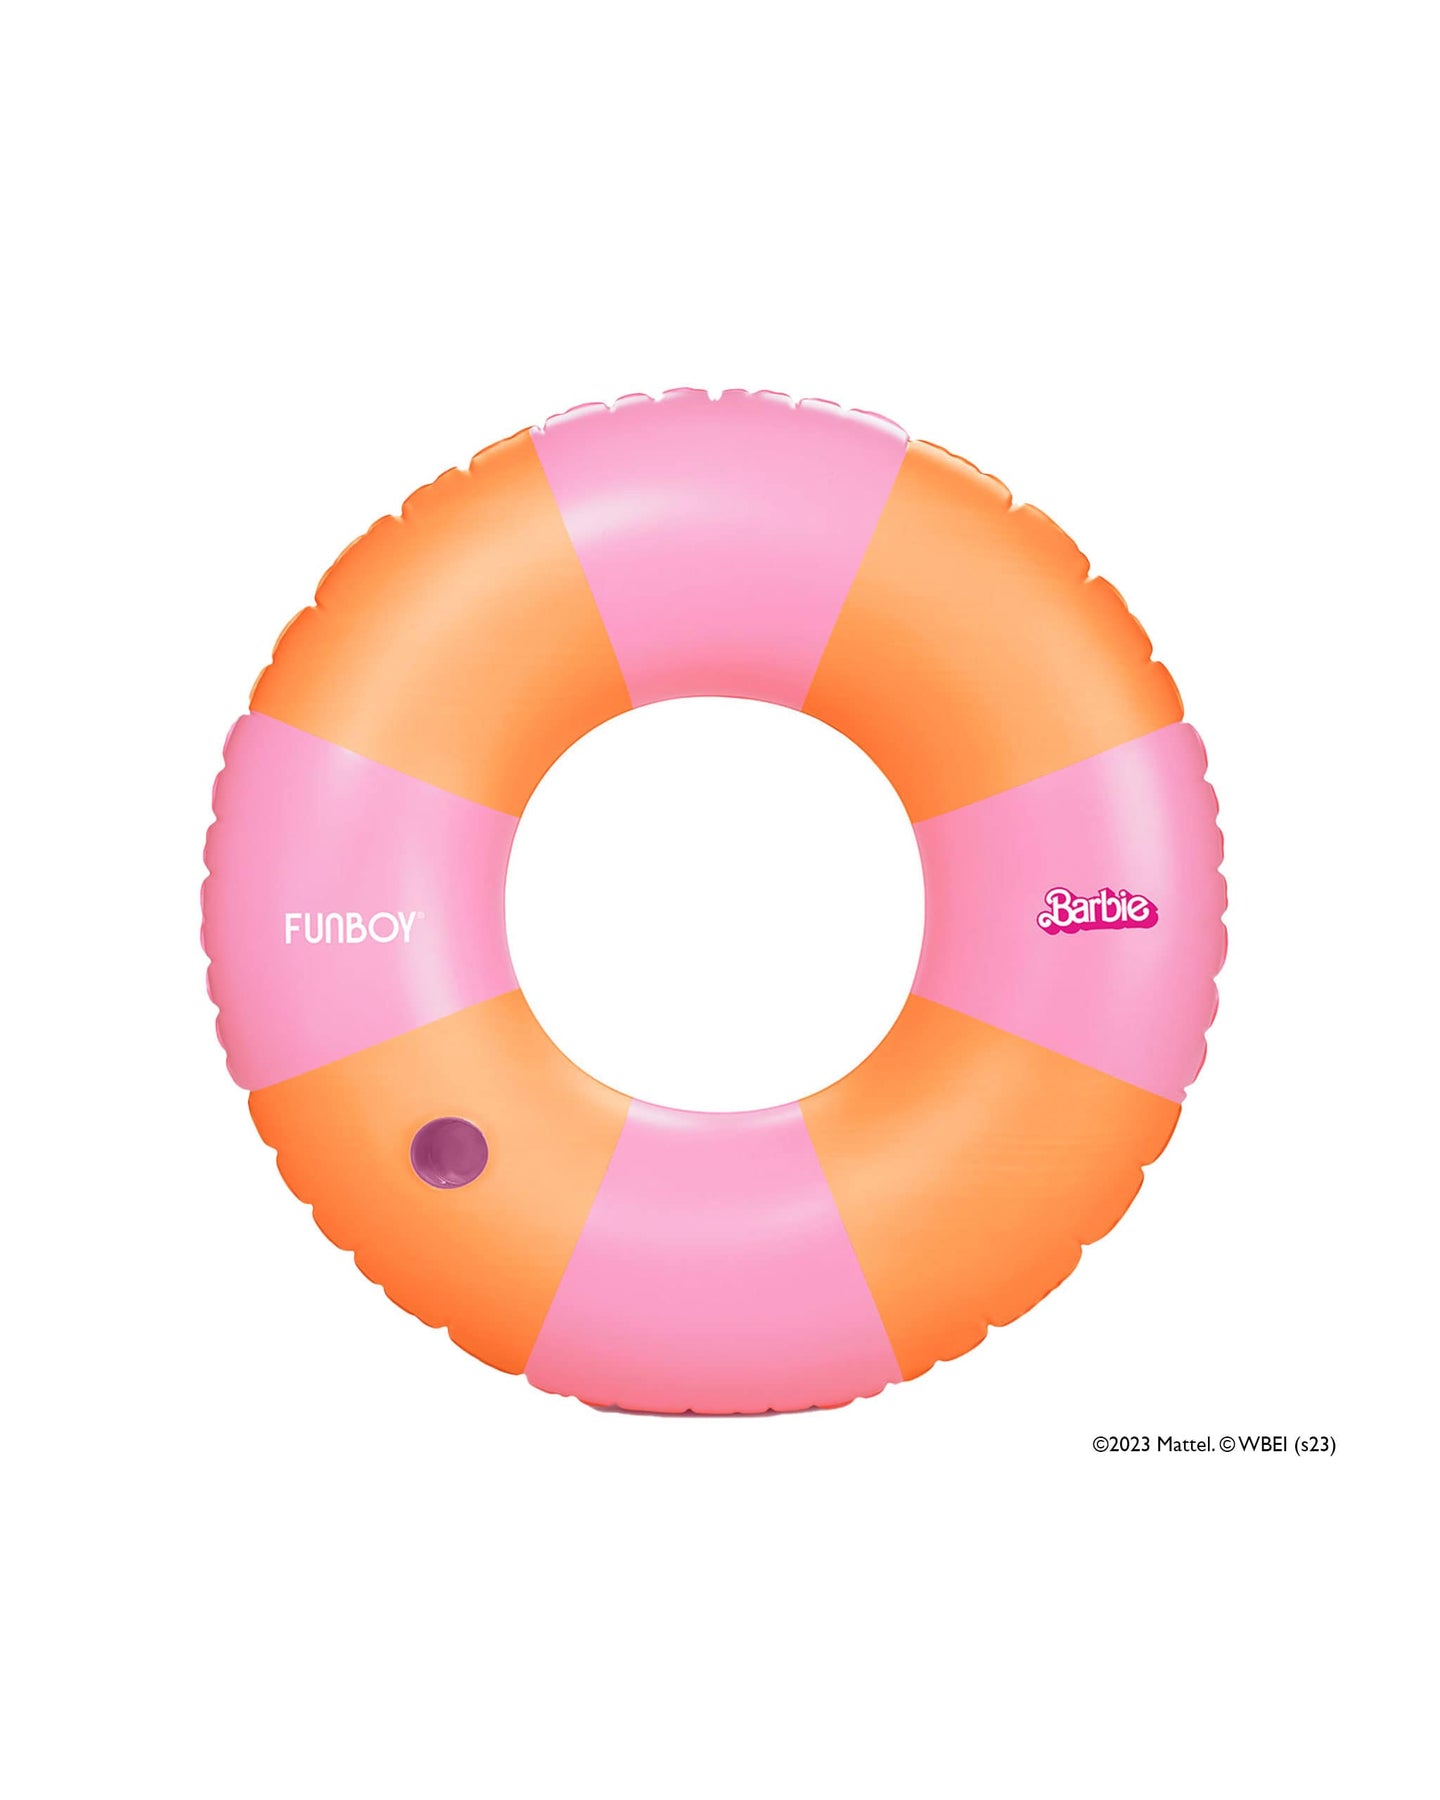 Barbie Movie Official Tube Pool Float - Pink & Orange